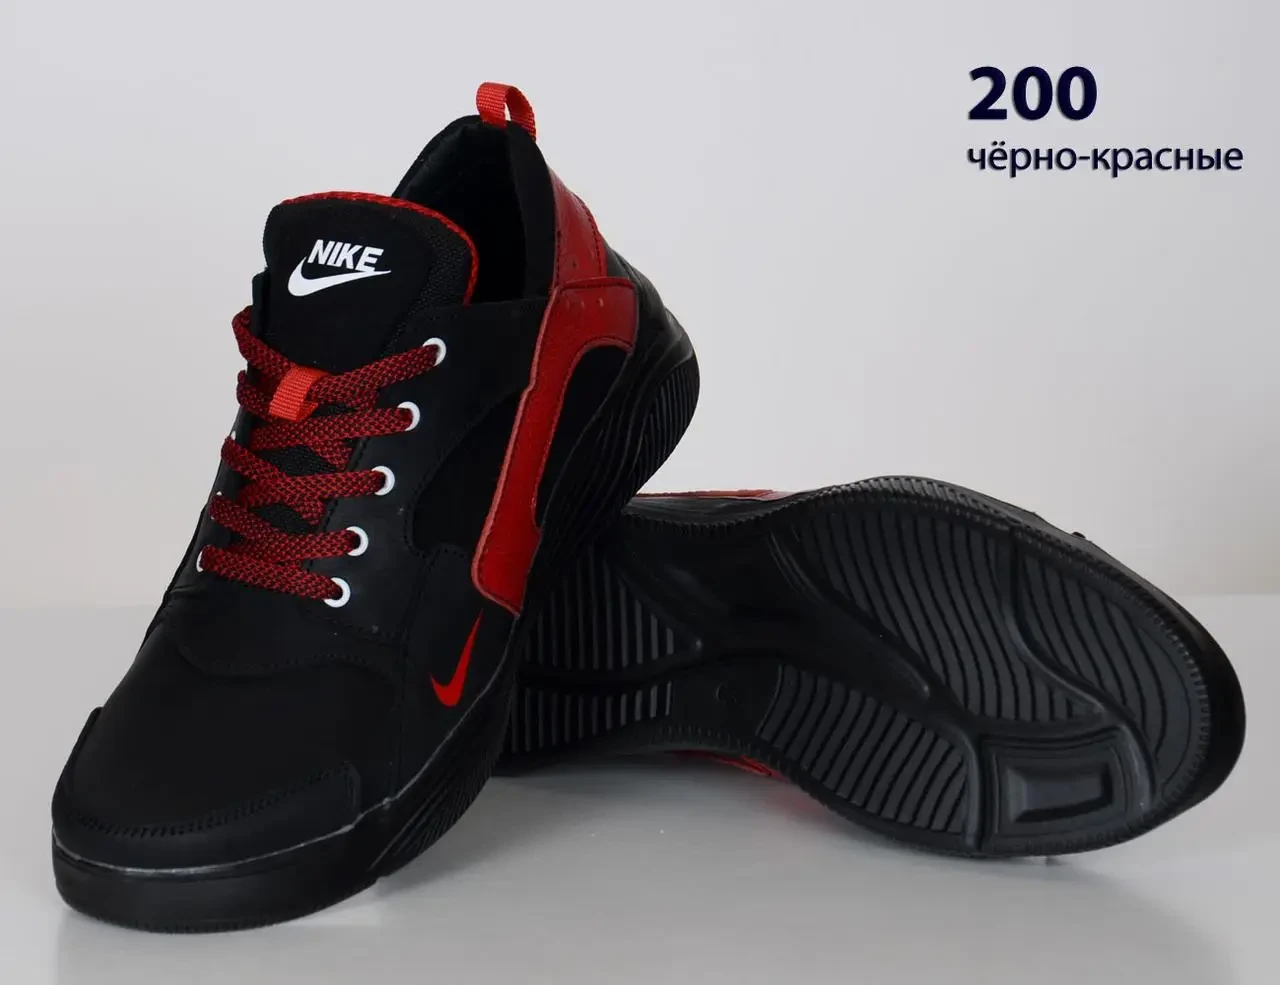 Шкіряні кросівки Nike  (200 чорно-червона) чоловічі спортивні кросівки шкіряні чоловічі